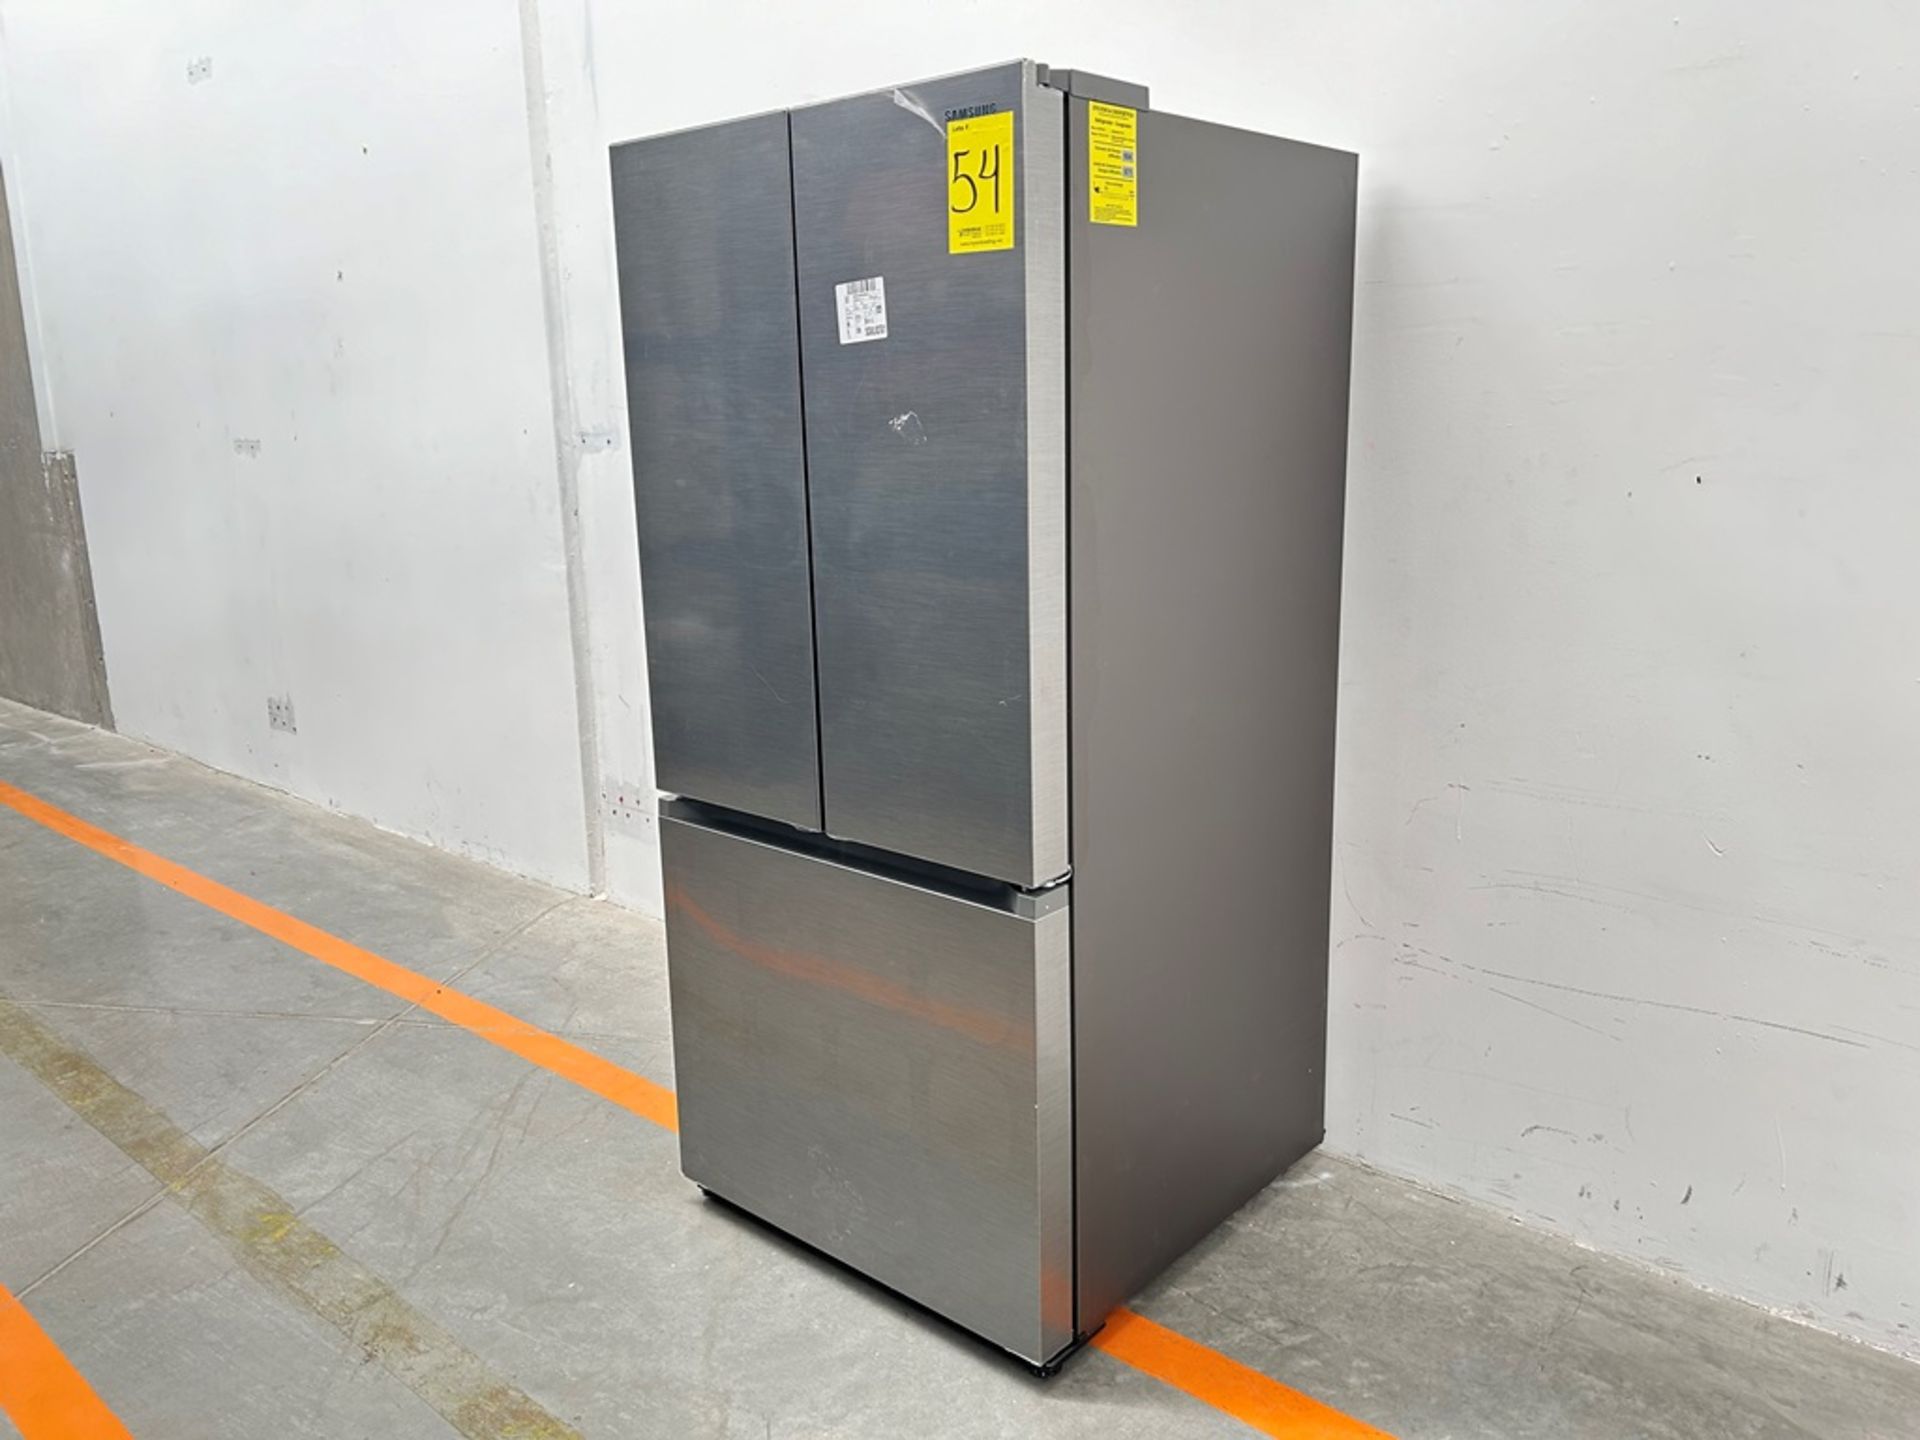 (NUEVO) Refrigerador Marca SAMSUNG, Modelo RF25C5151S9, Serie 00634V, Color GRIS - Image 2 of 11